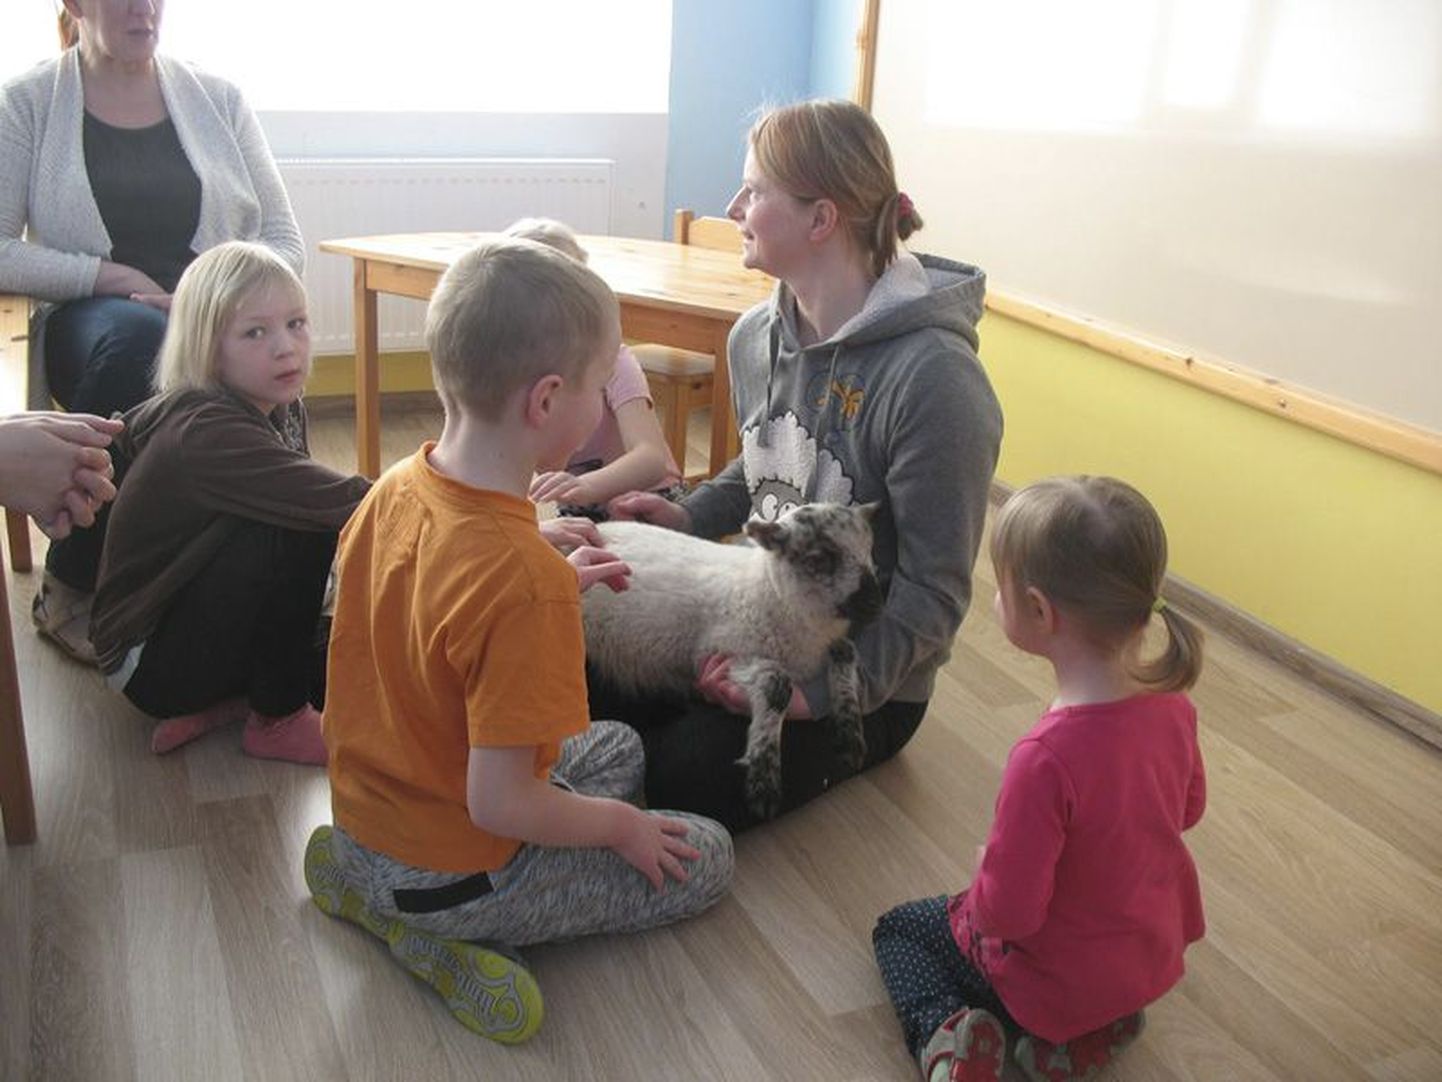 Jäneda kooli huvijuht ning talunik Margit Vijar näitas lambatalle lasteaialastele, kellele loomake kohe meeldima hakkas.